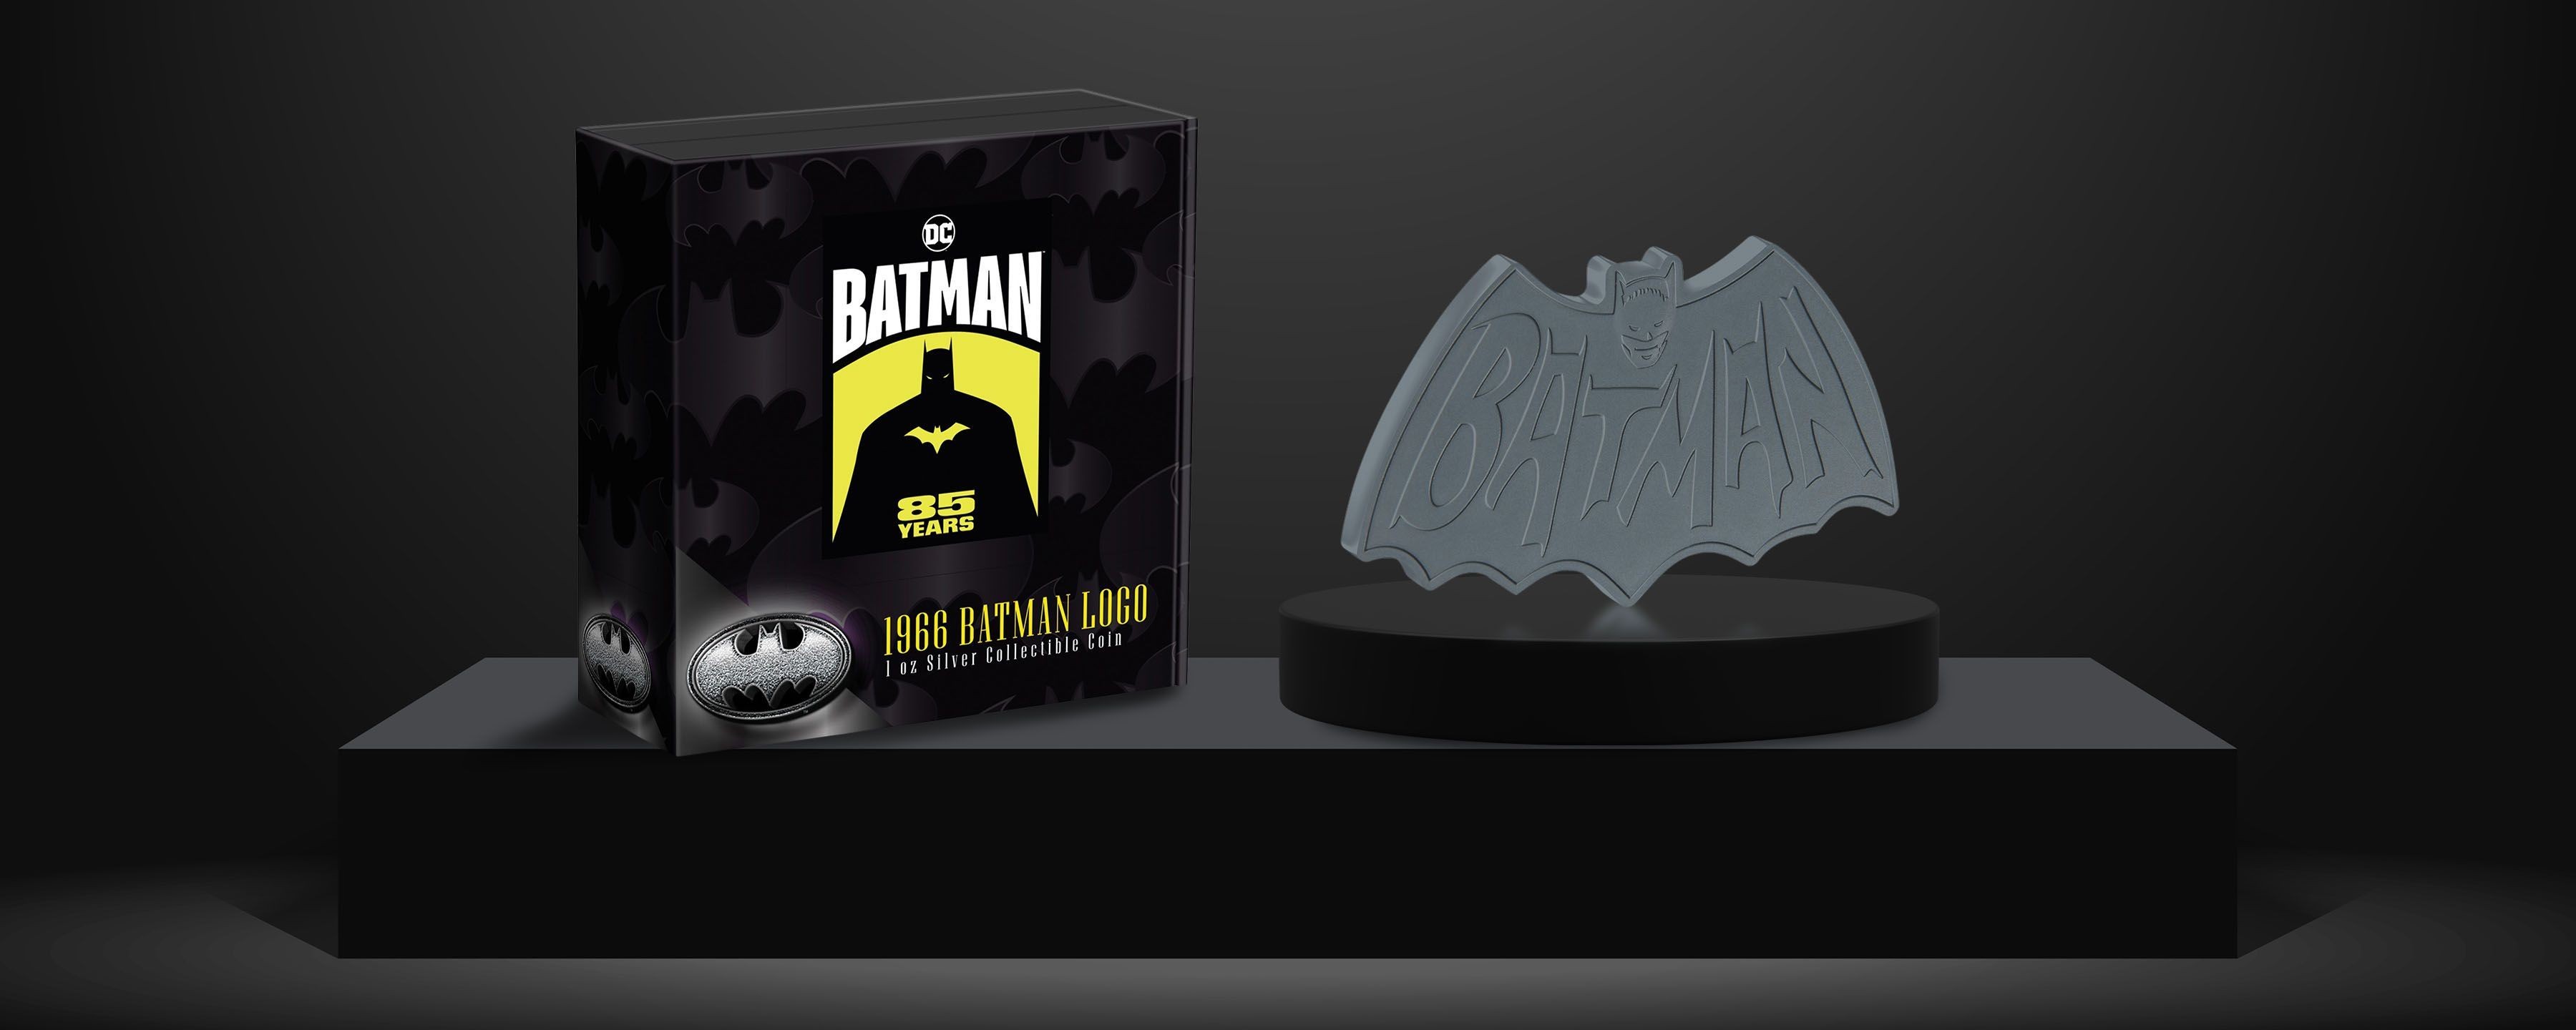 BATMAN 85 Years – 1966 Batman Logo 1oz Silver Collectible Coin